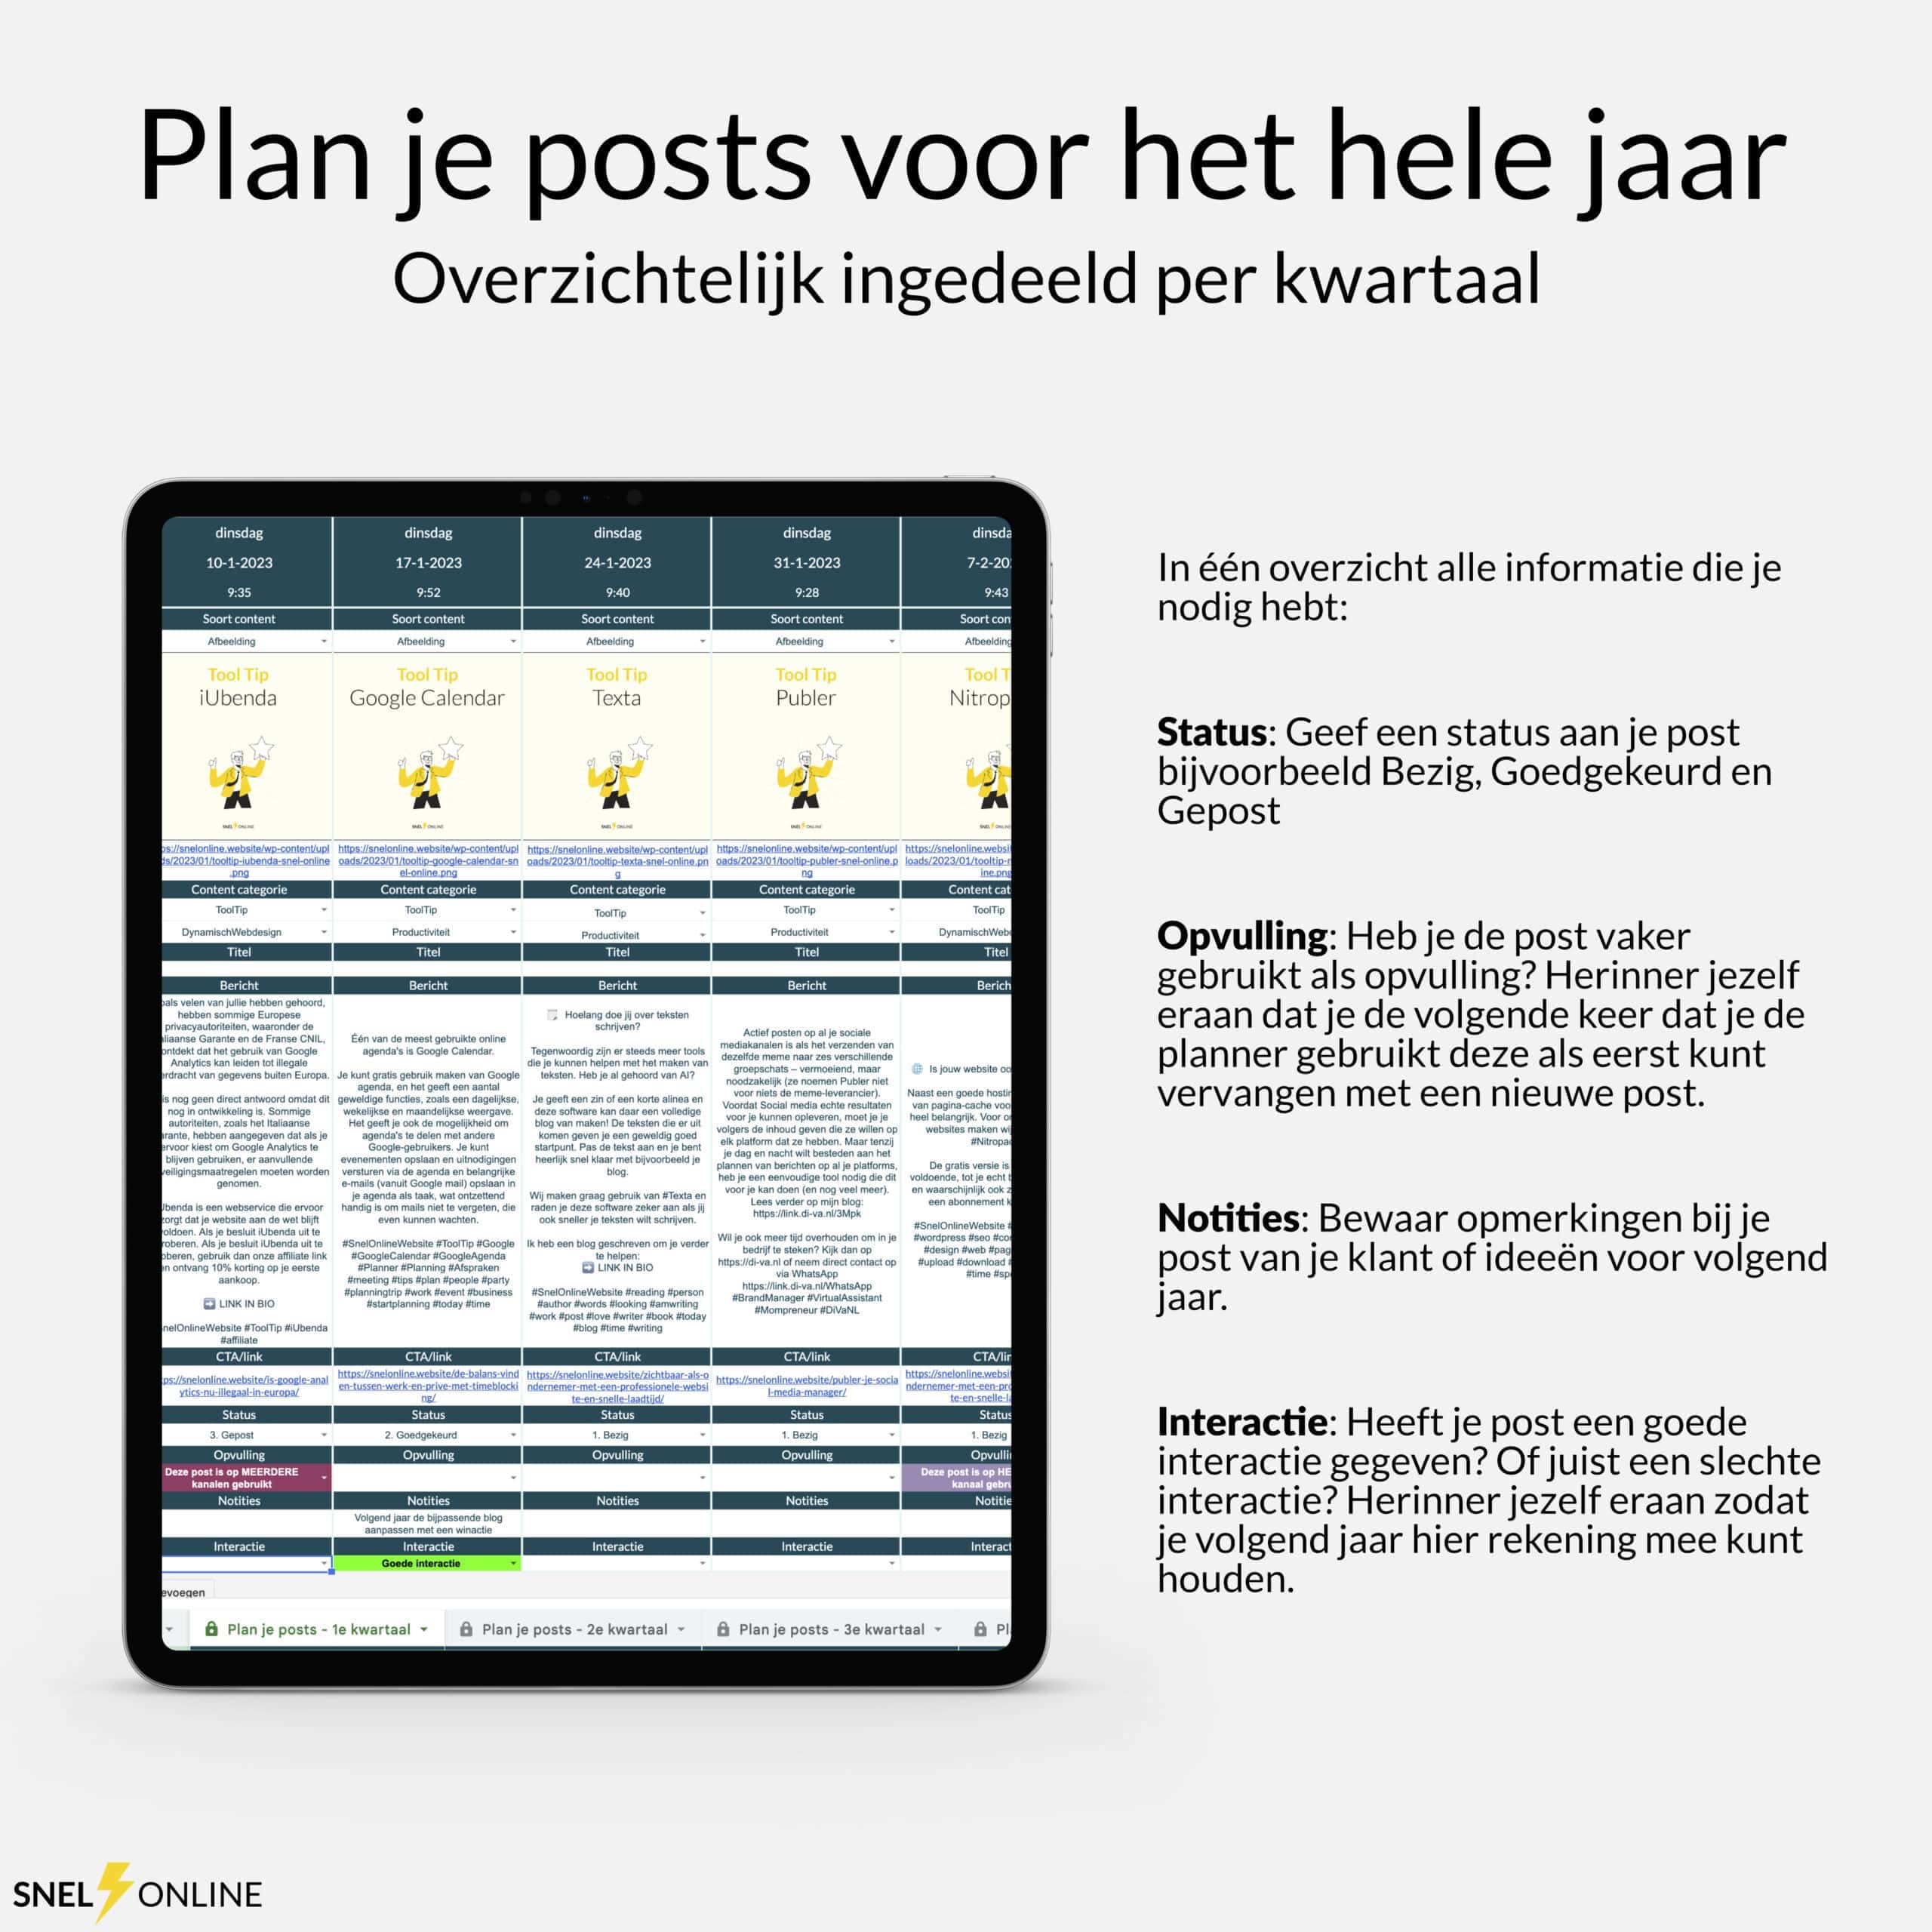 Smartphone met een contentplanner-app met details over het weer, in een promotionele afbeelding met de titel "plan je posts voor het hele jaar", met de nadruk op de jaarlijkse planning van sociale media.